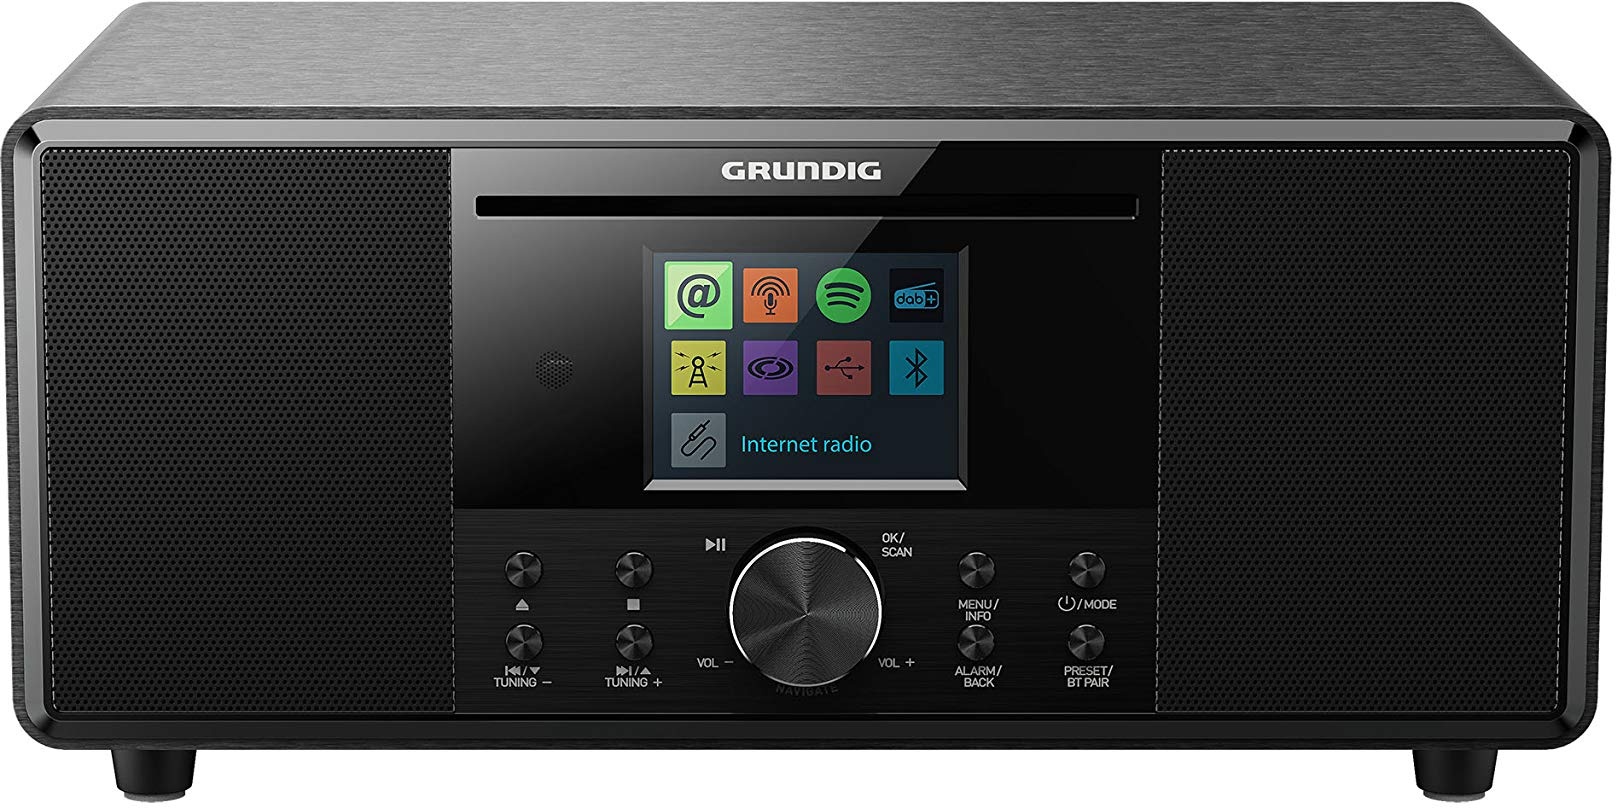 GRUNDIG GIR1070 DTR 7000 All-In-One Internetradio, FM/RDS/DAB+/Internetradio, Bluetooth, Schlummerfunktion, Dual Alarm, 2,8 Zoll Farbdisplay, Schwarz